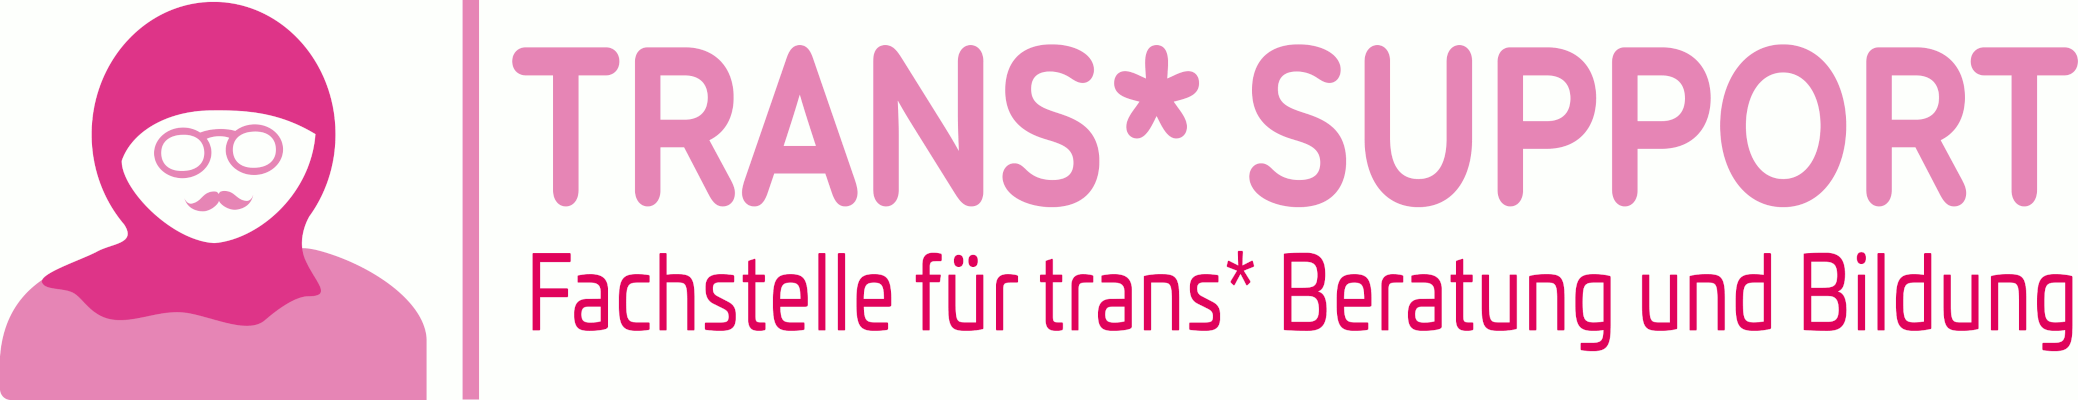 Trans*support | Fachstelle für Beratung und Bildung